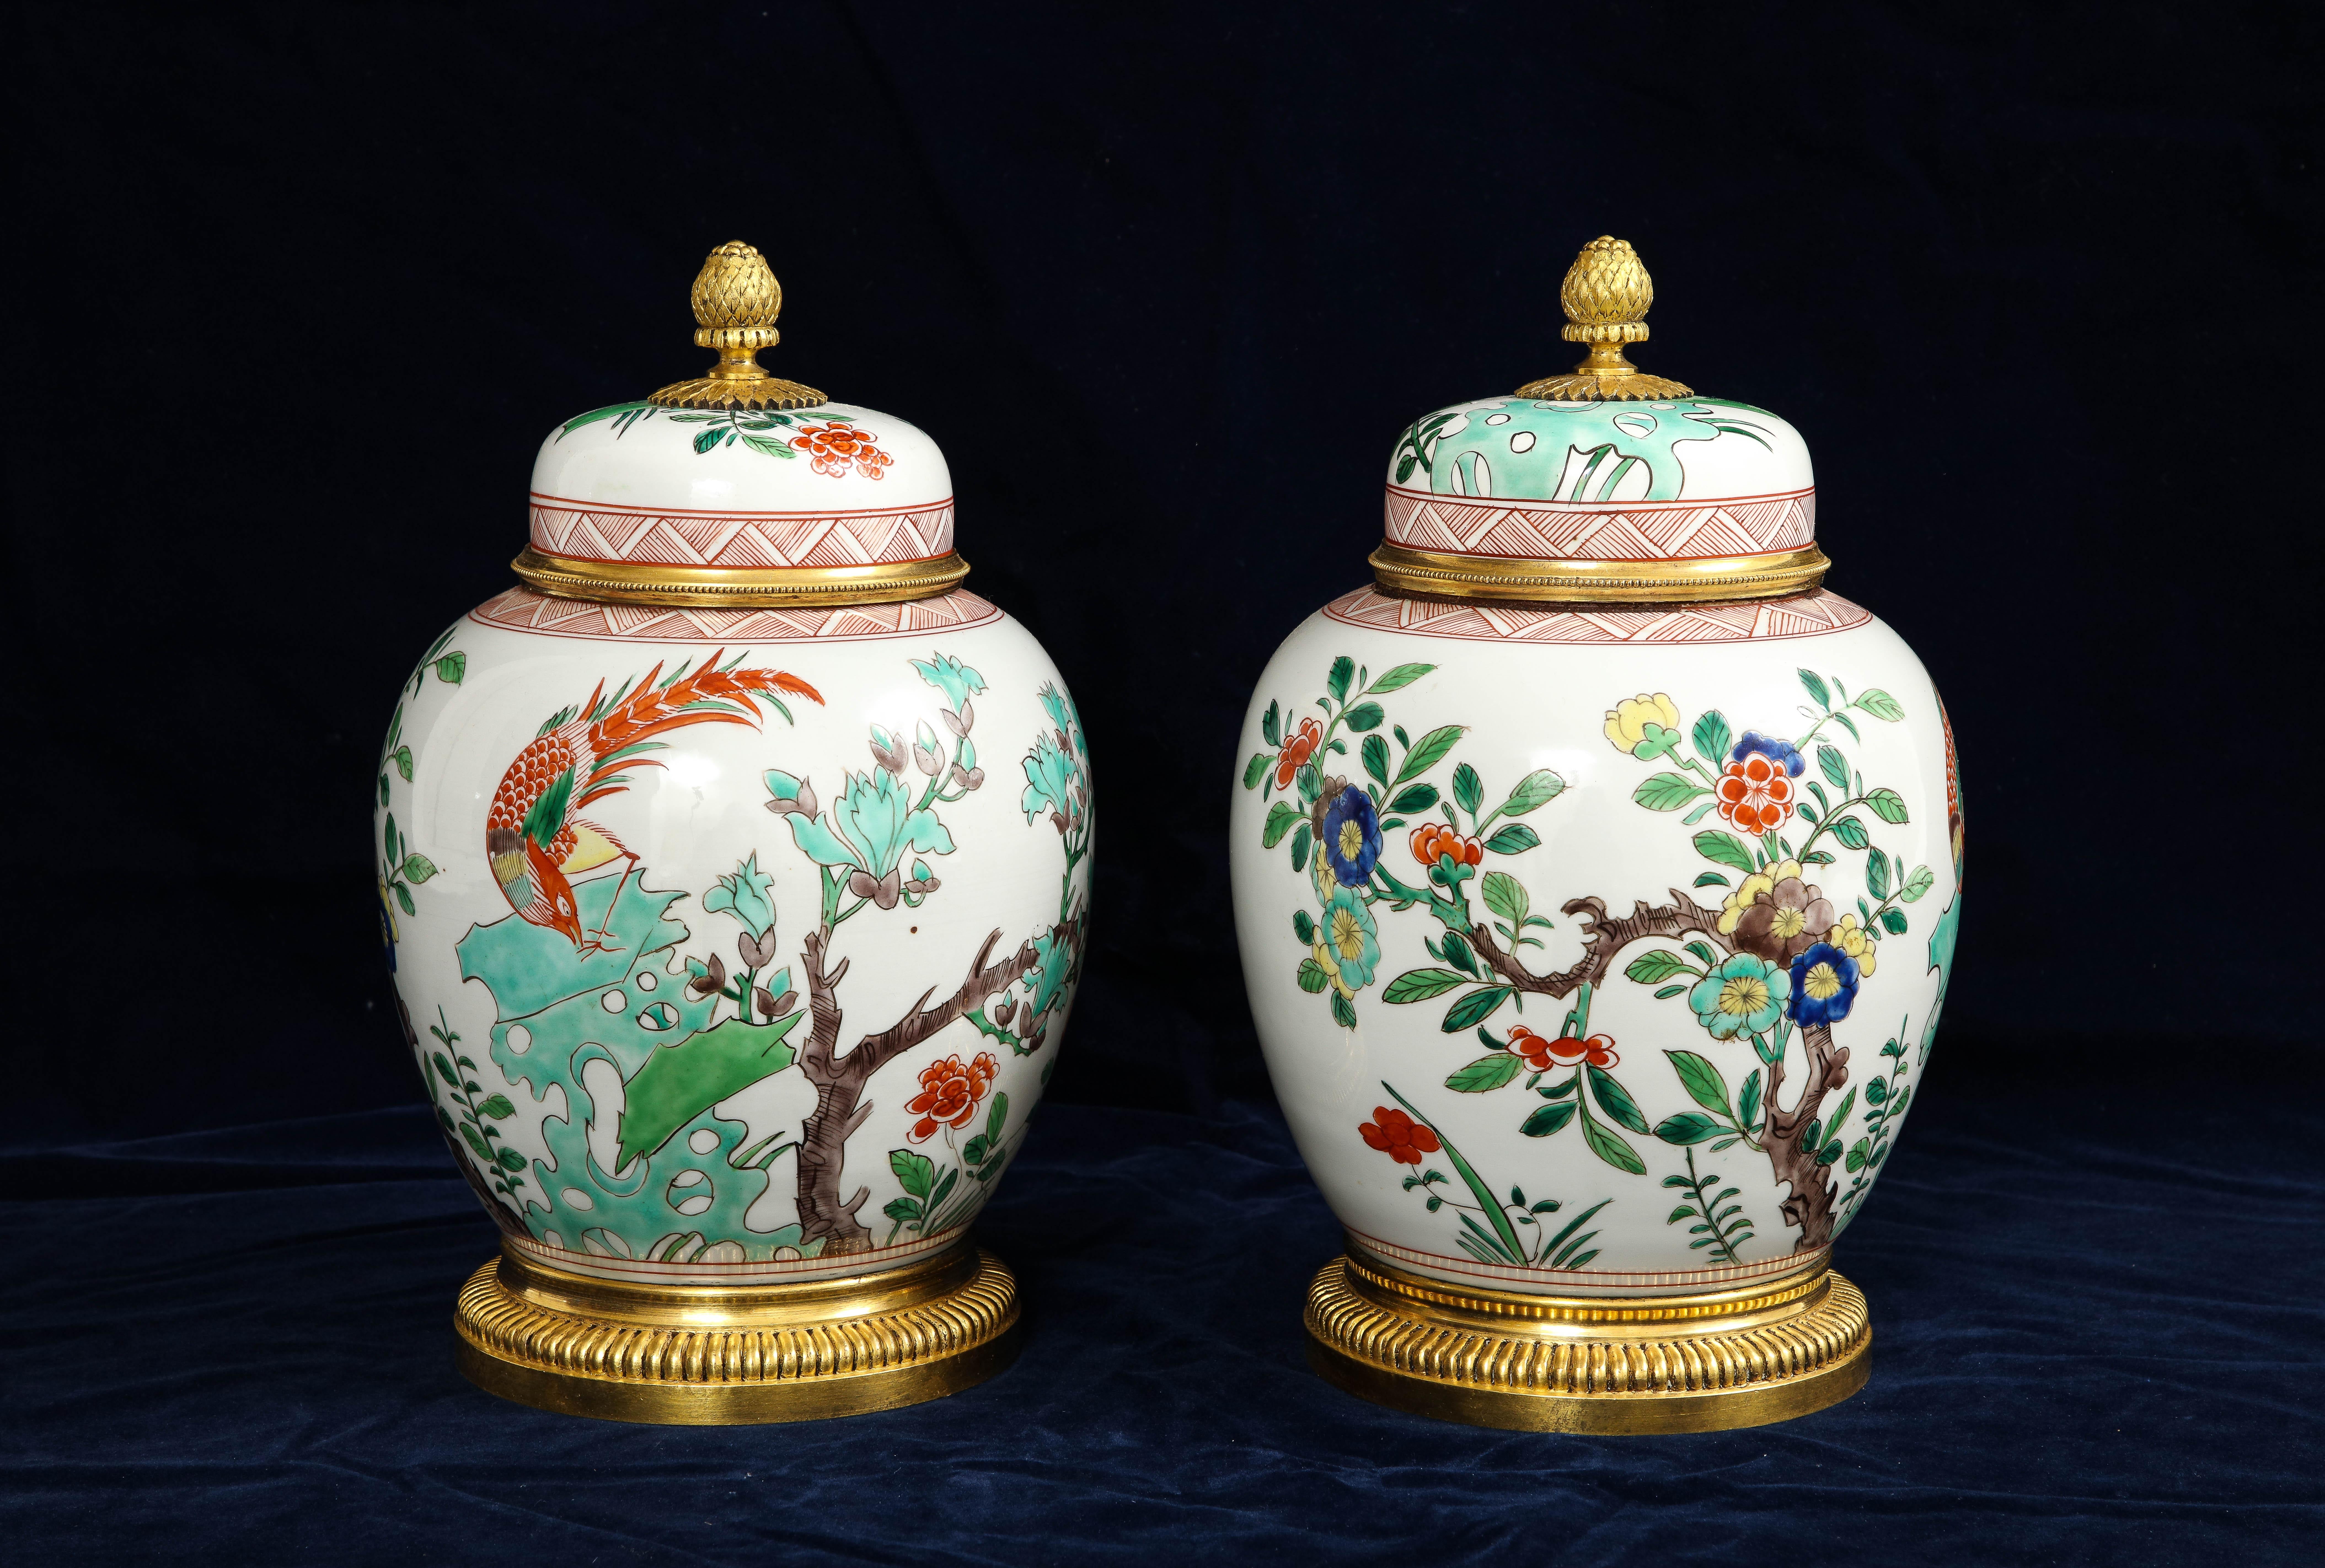 Merveilleuse paire de vases couverts en porcelaine chinoise de la famille rose, montés en bronze doré.  Les vases sont une véritable merveille de l'art antique. En admirant la superbe paire assortie, vous serez captivé par les détails complexes des